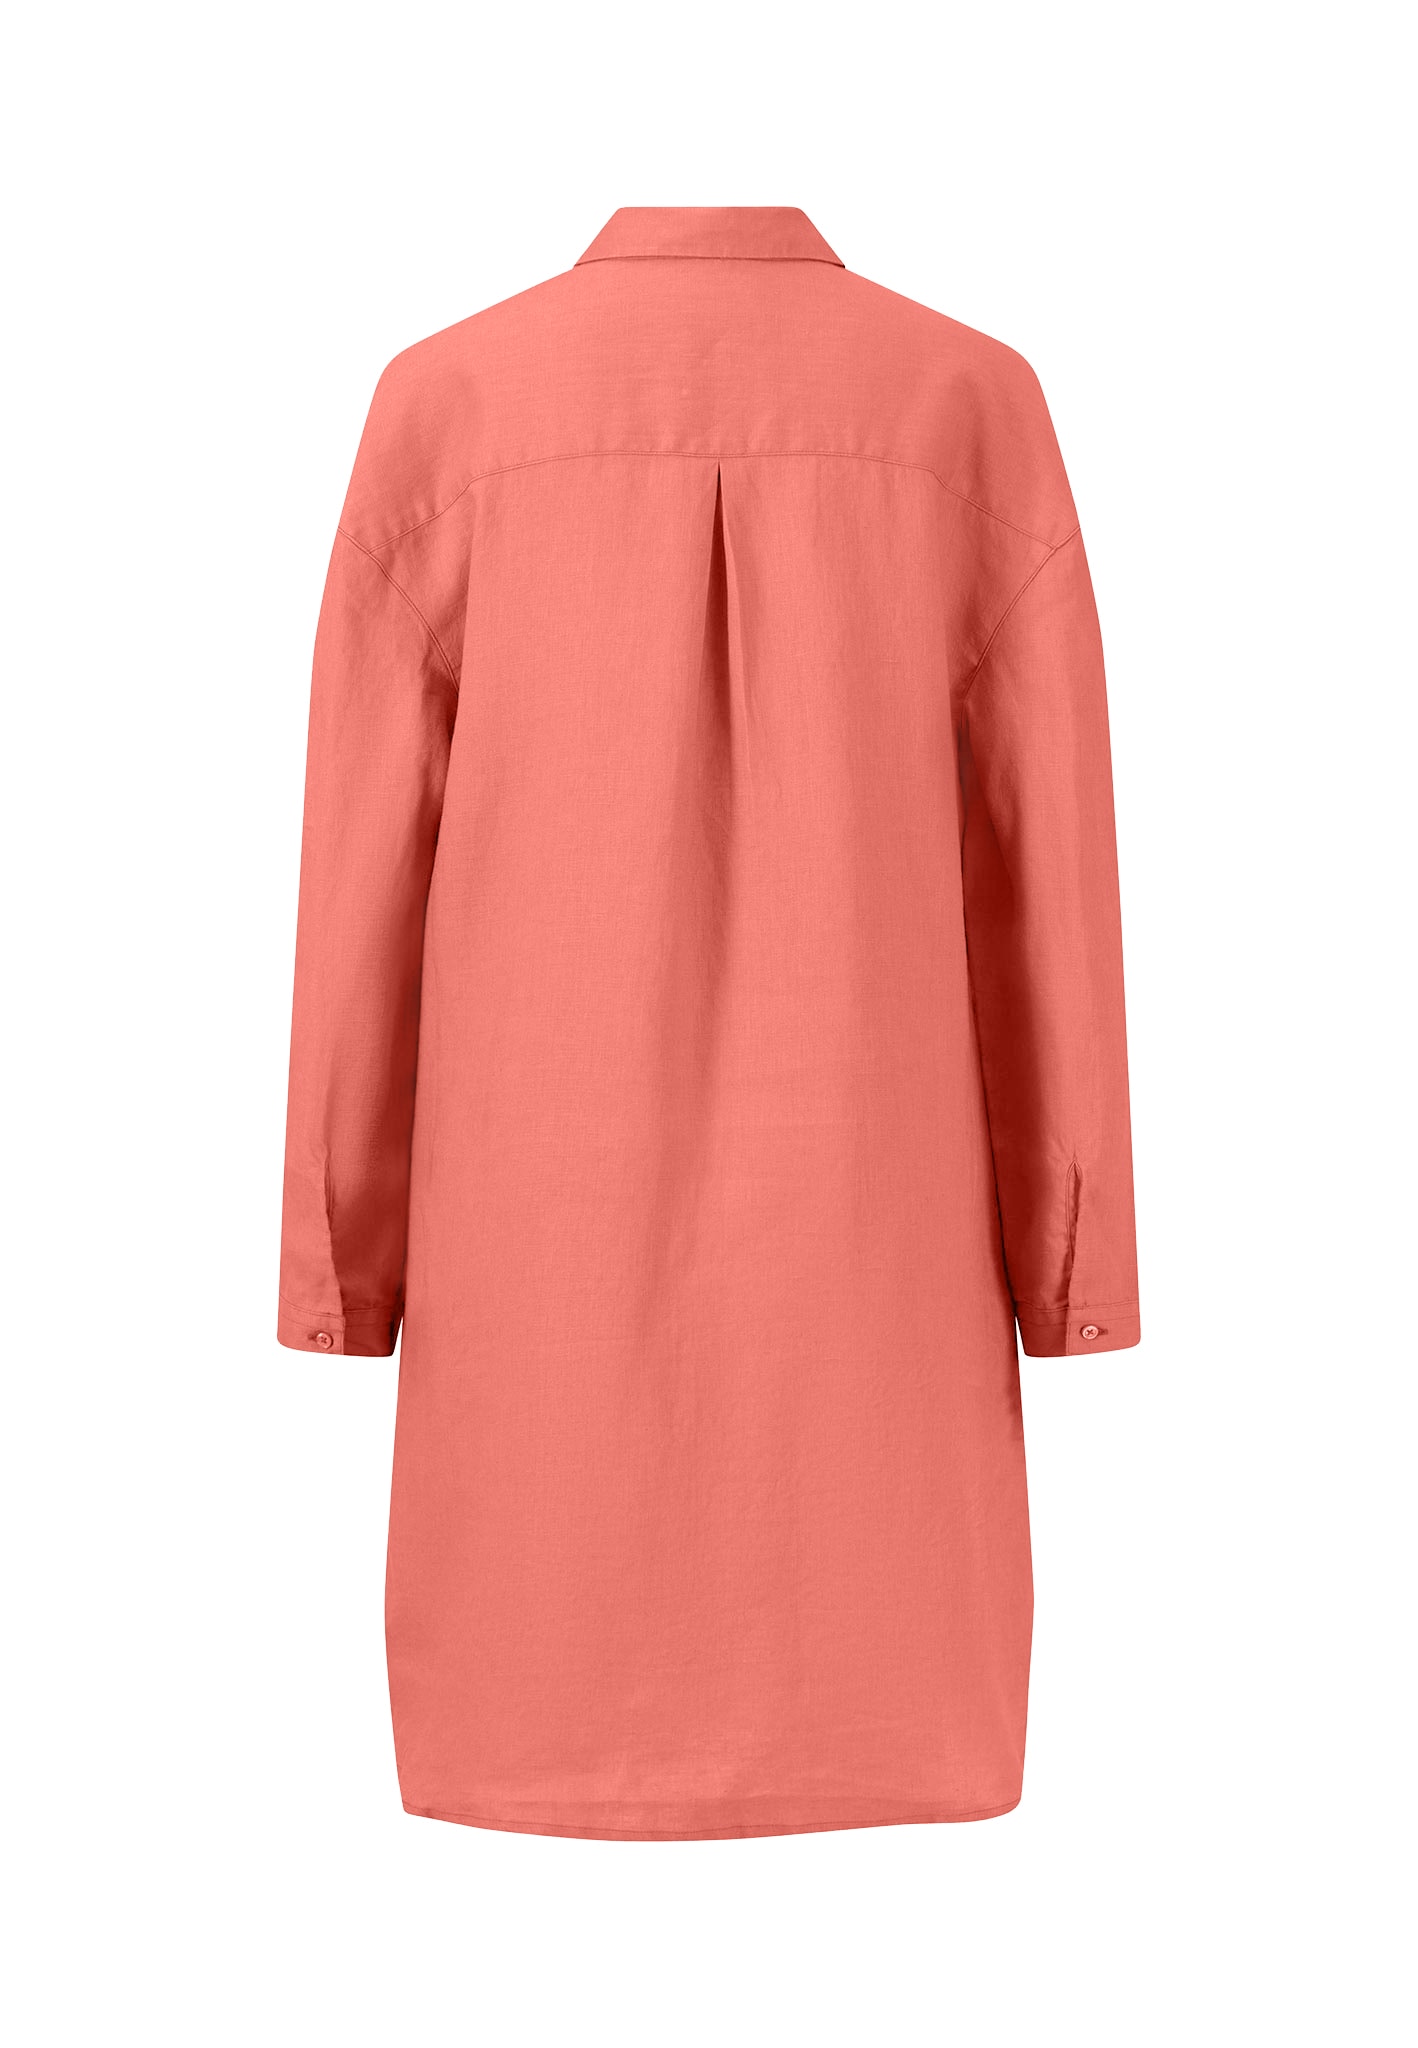 FYNCH-HATTON Blusenkleid, mit Markenlabel